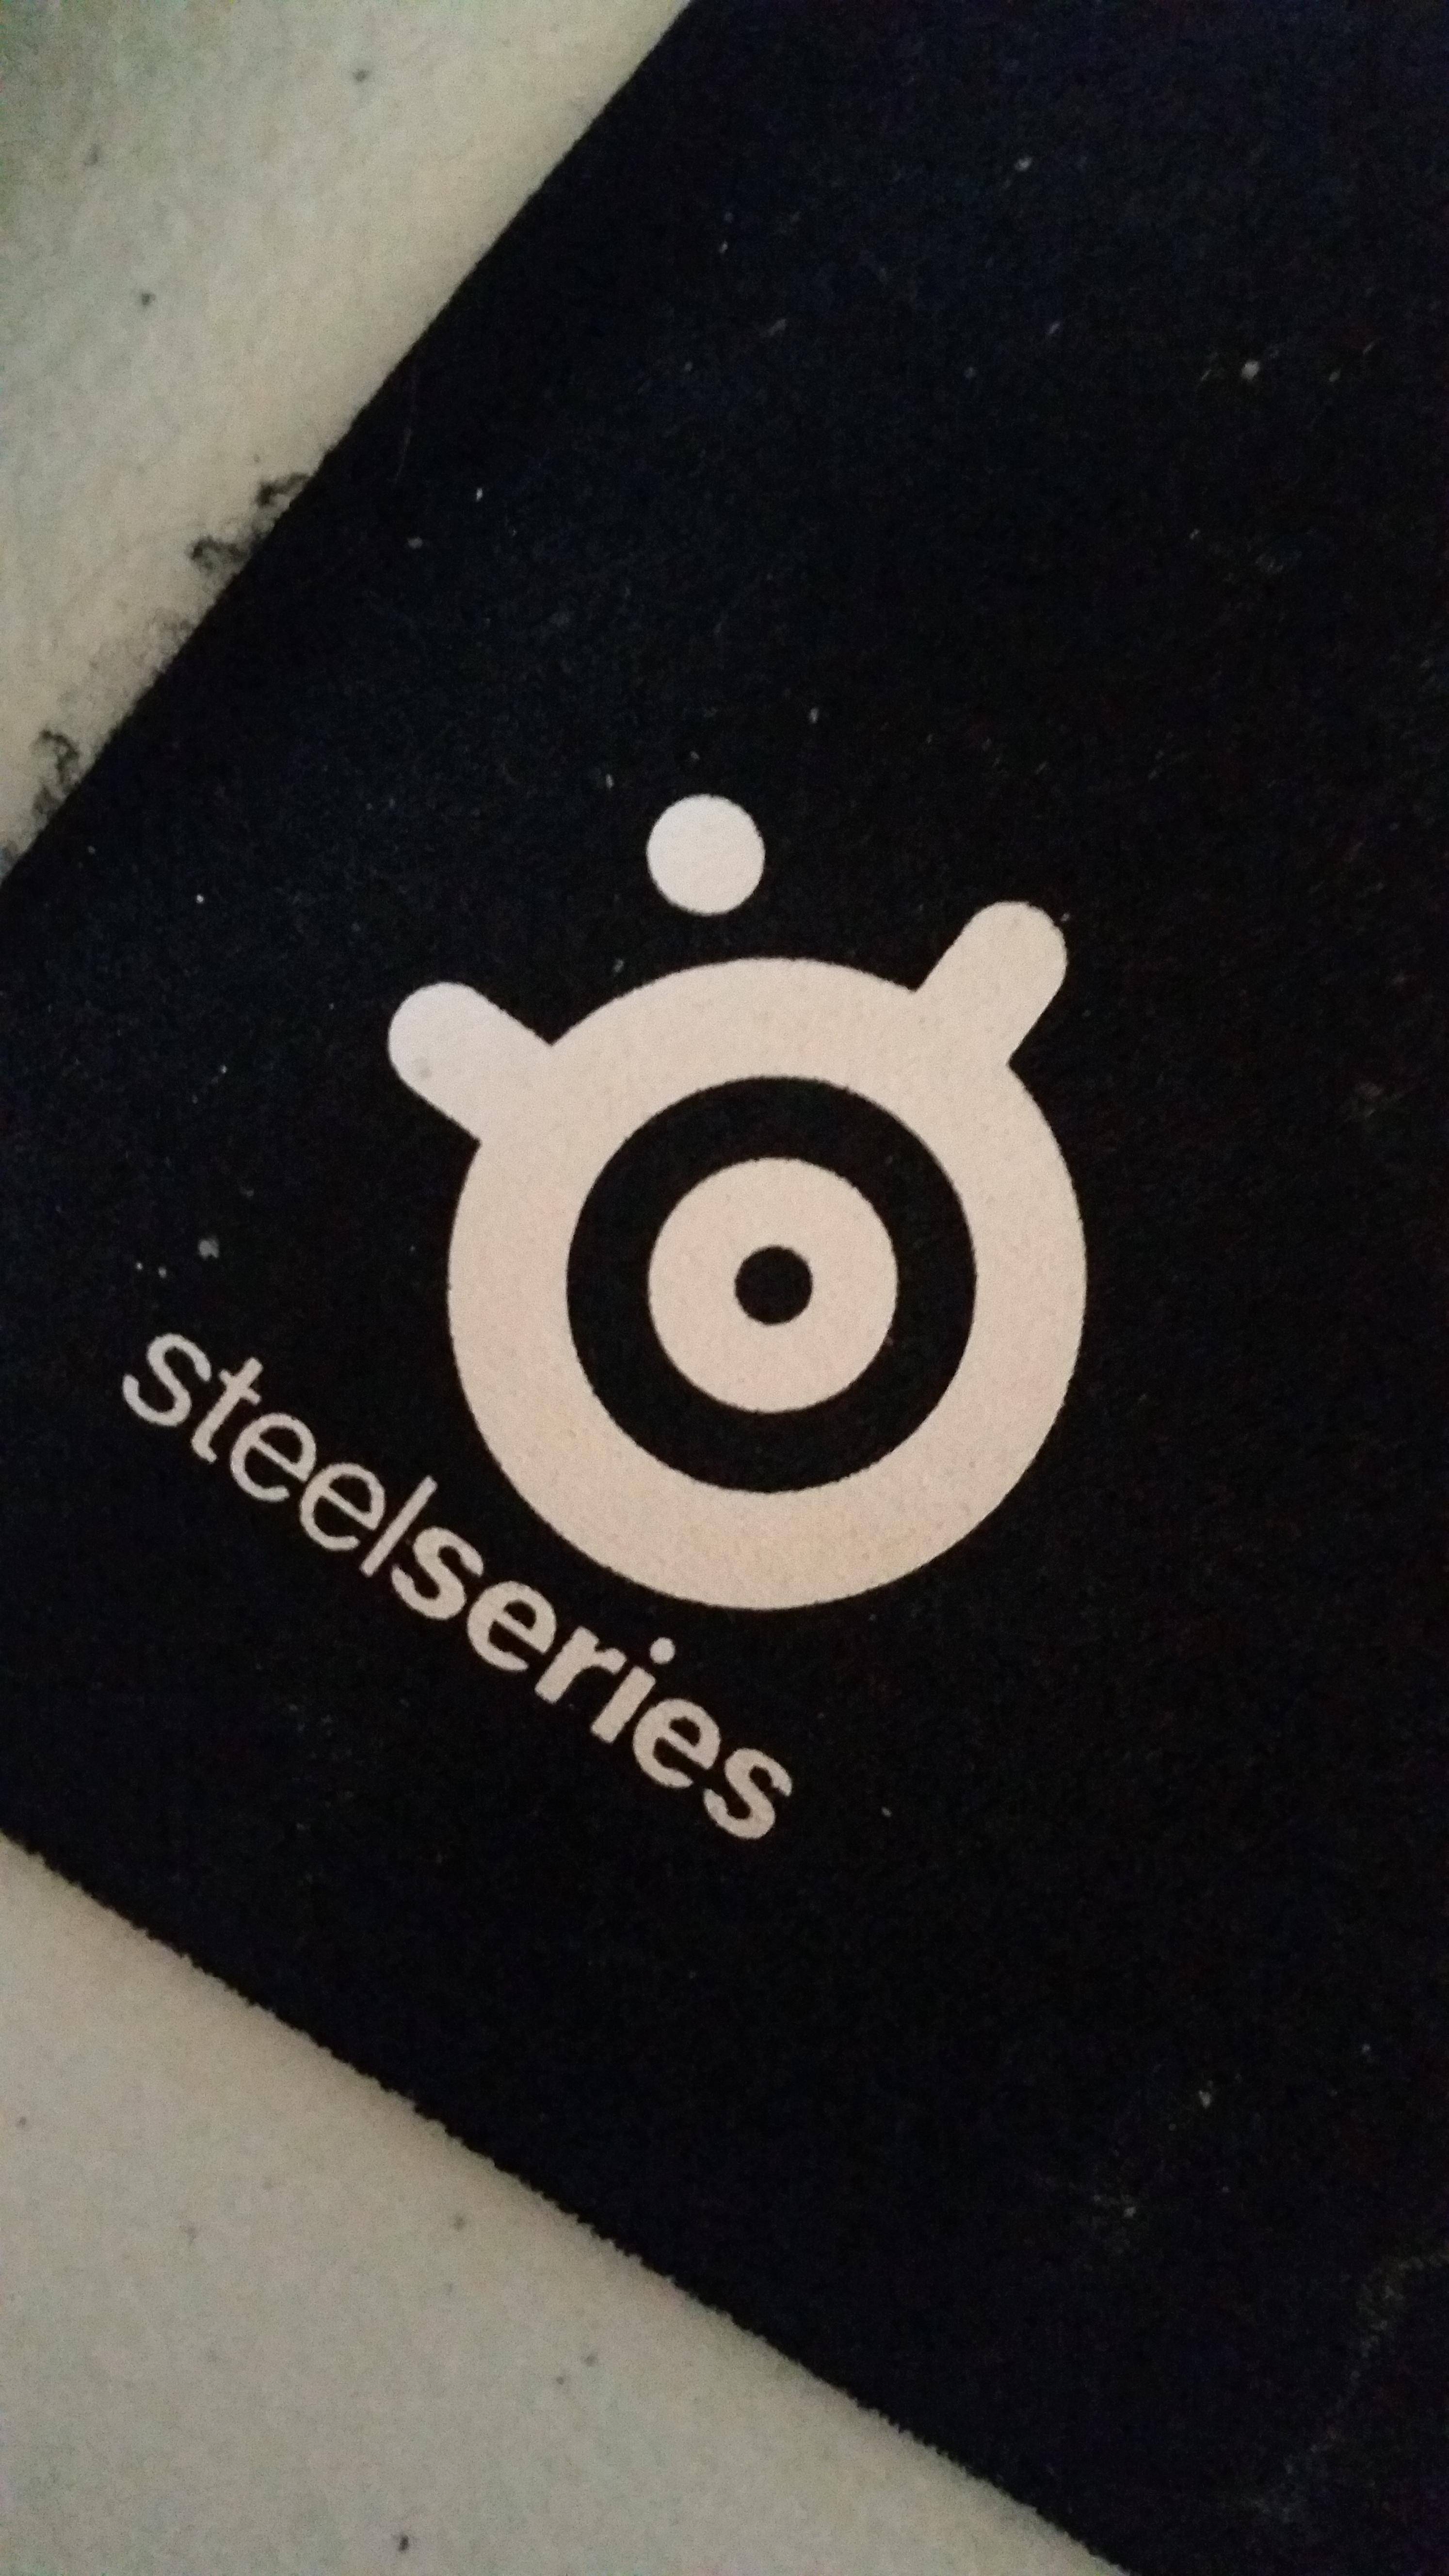 SteelSeries Logo - The Steelseries logo looks like a happy fat guy